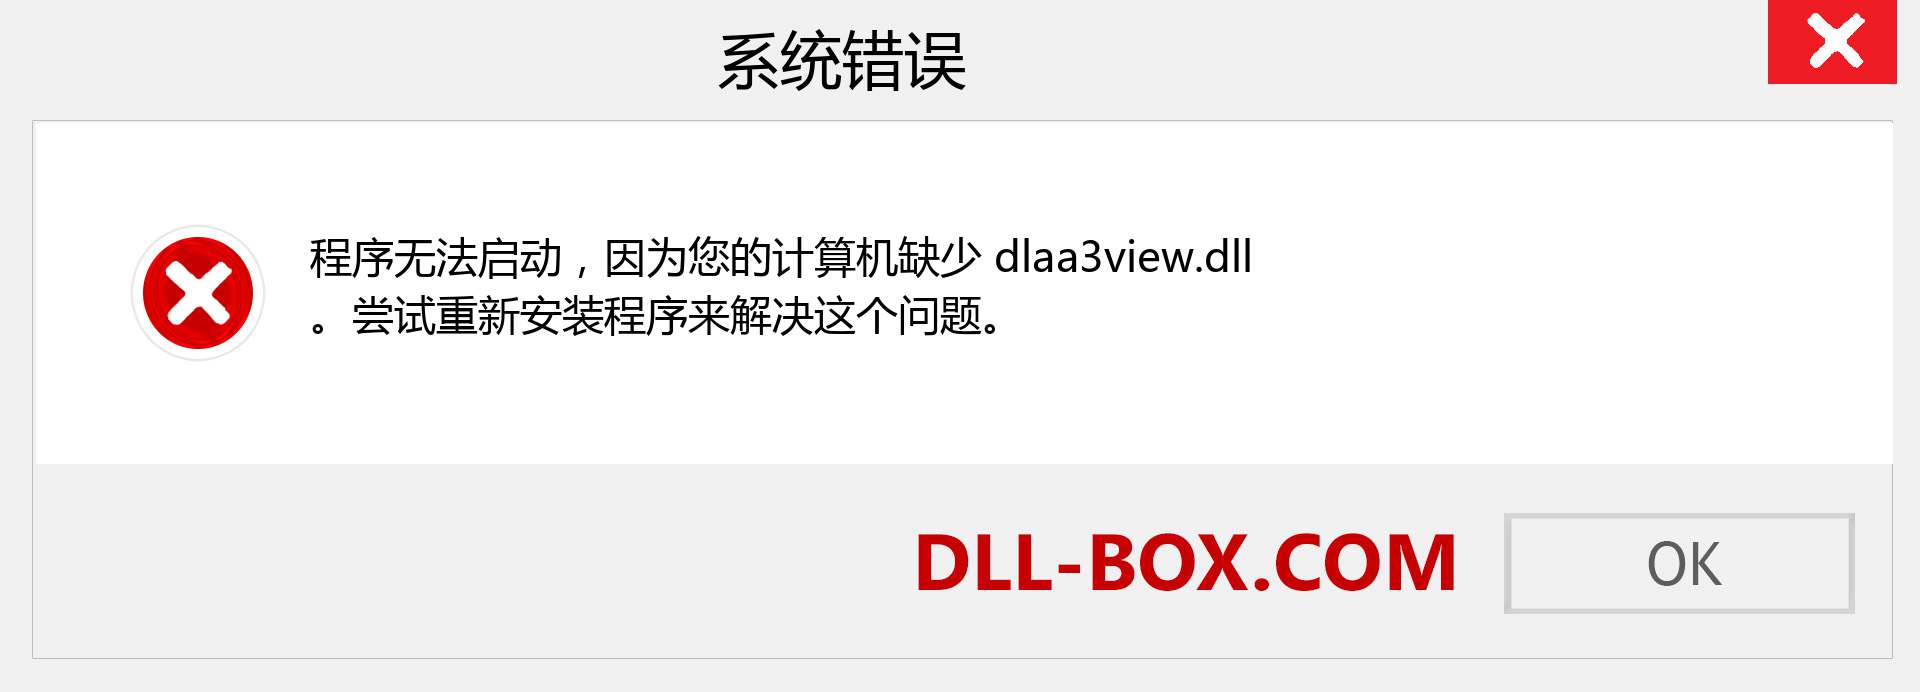 dlaa3view.dll 文件丢失？。 适用于 Windows 7、8、10 的下载 - 修复 Windows、照片、图像上的 dlaa3view dll 丢失错误